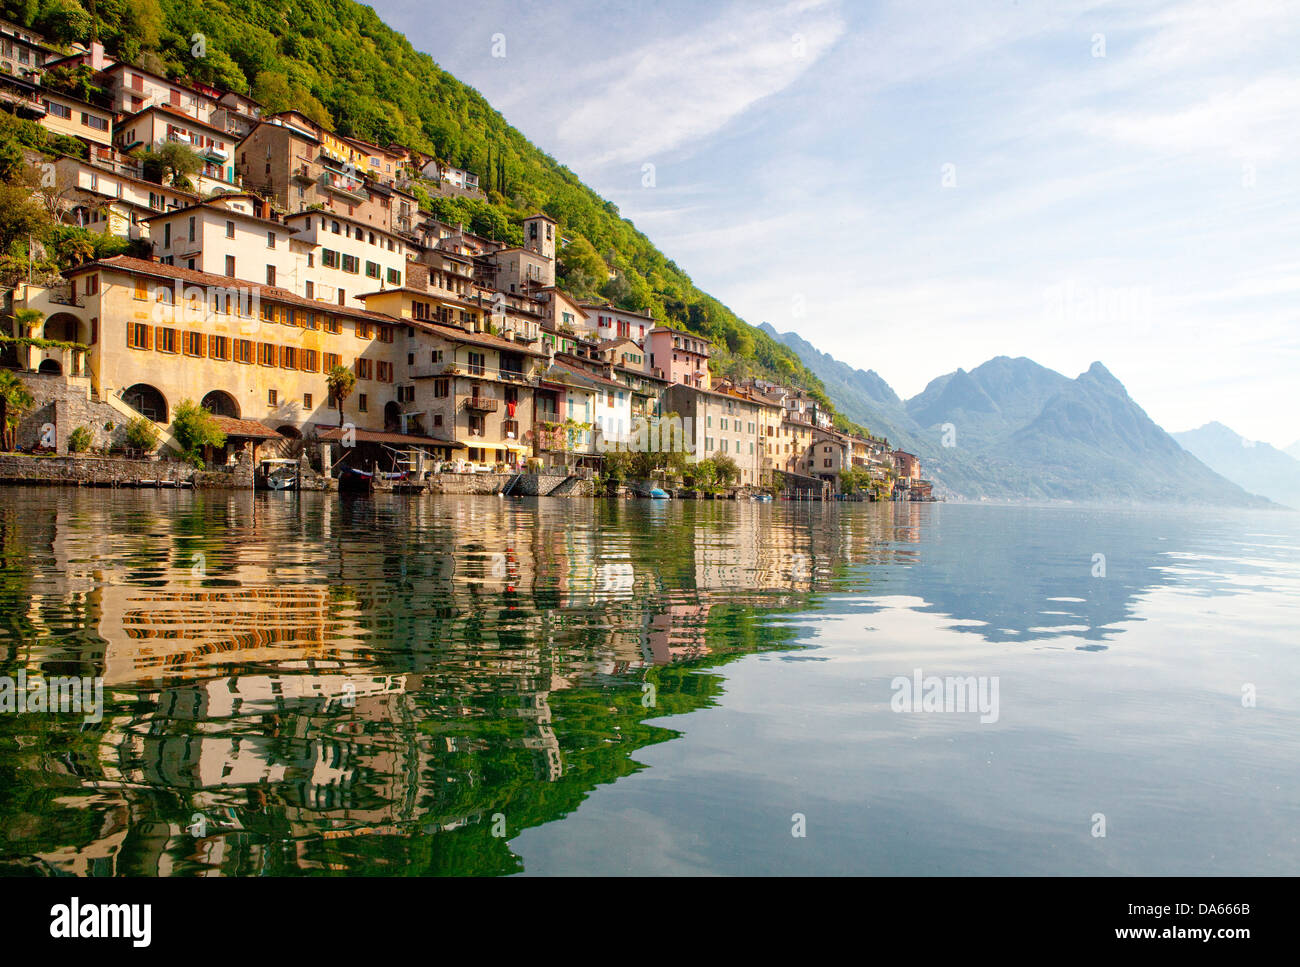 Gandria, cantón, TI, Ticino, en el sur de Suiza, el agua, el lago, los lagos, la aldea, Suiza, Europa, Lago de Lugano, Foto de stock